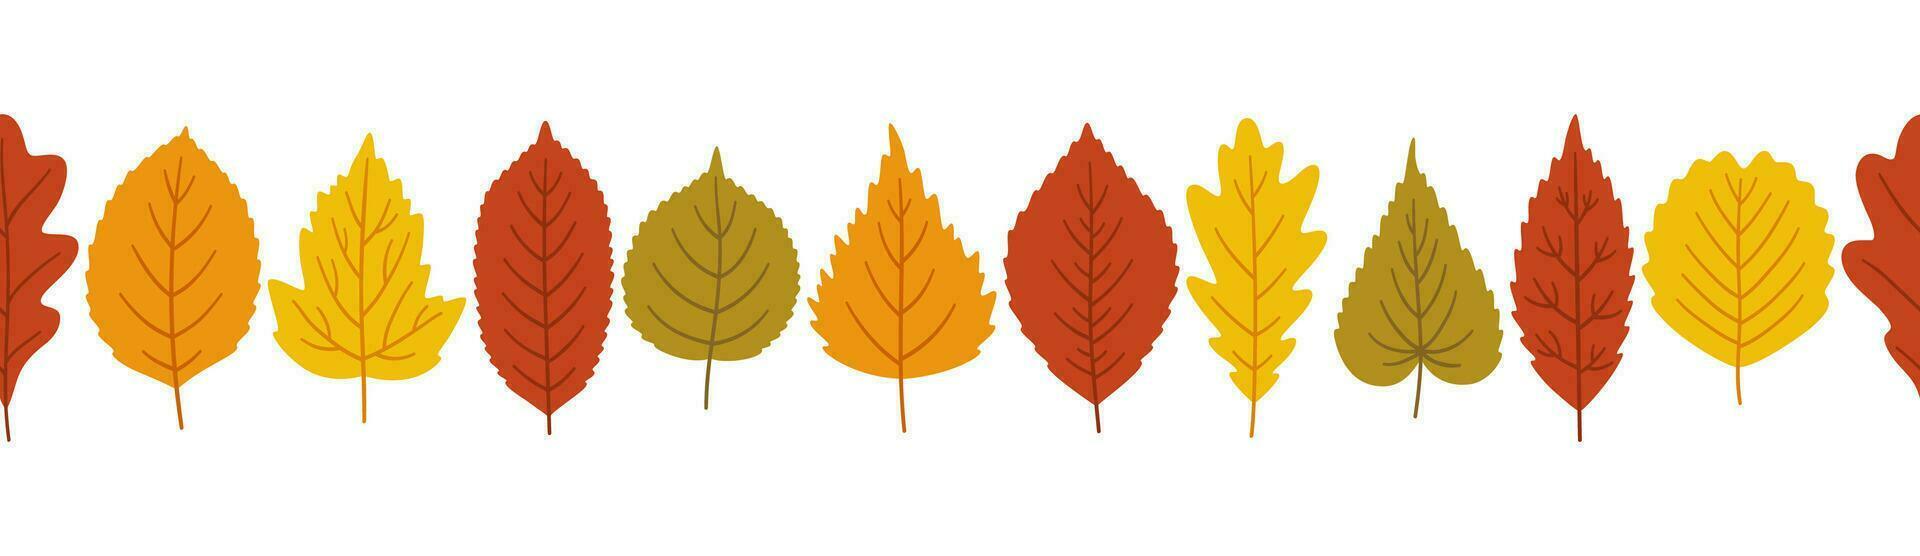 Herbst Blätter Hintergrund, Banner Vorlage, Vektor Illustration.